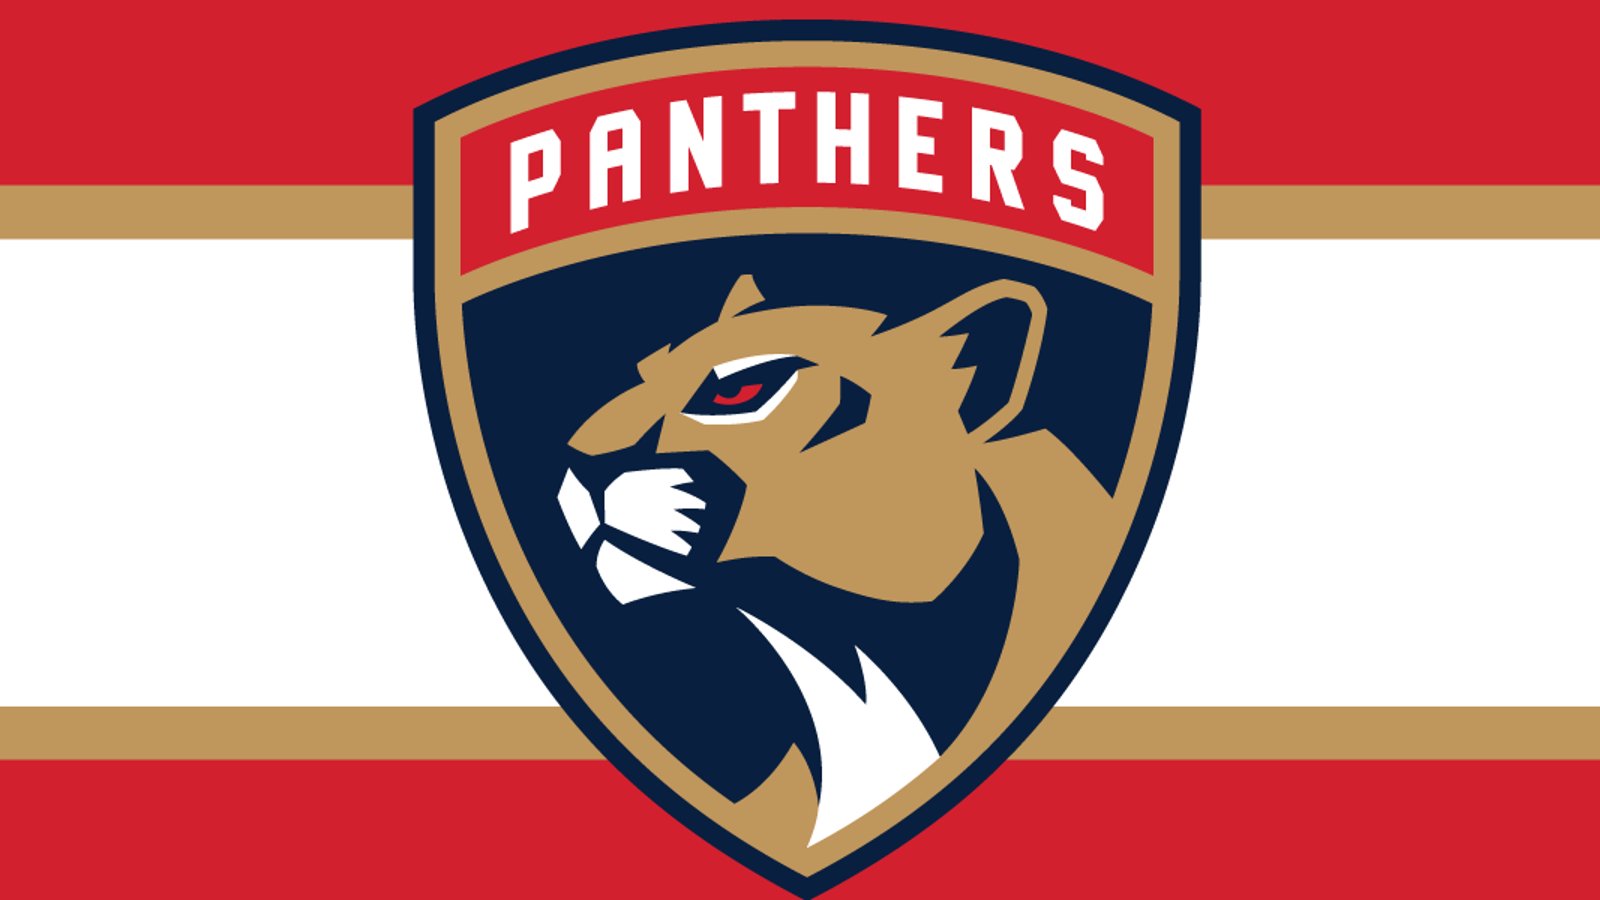 Un artiste fusionne les logos des Panthers et le résultat est à couper le souffle